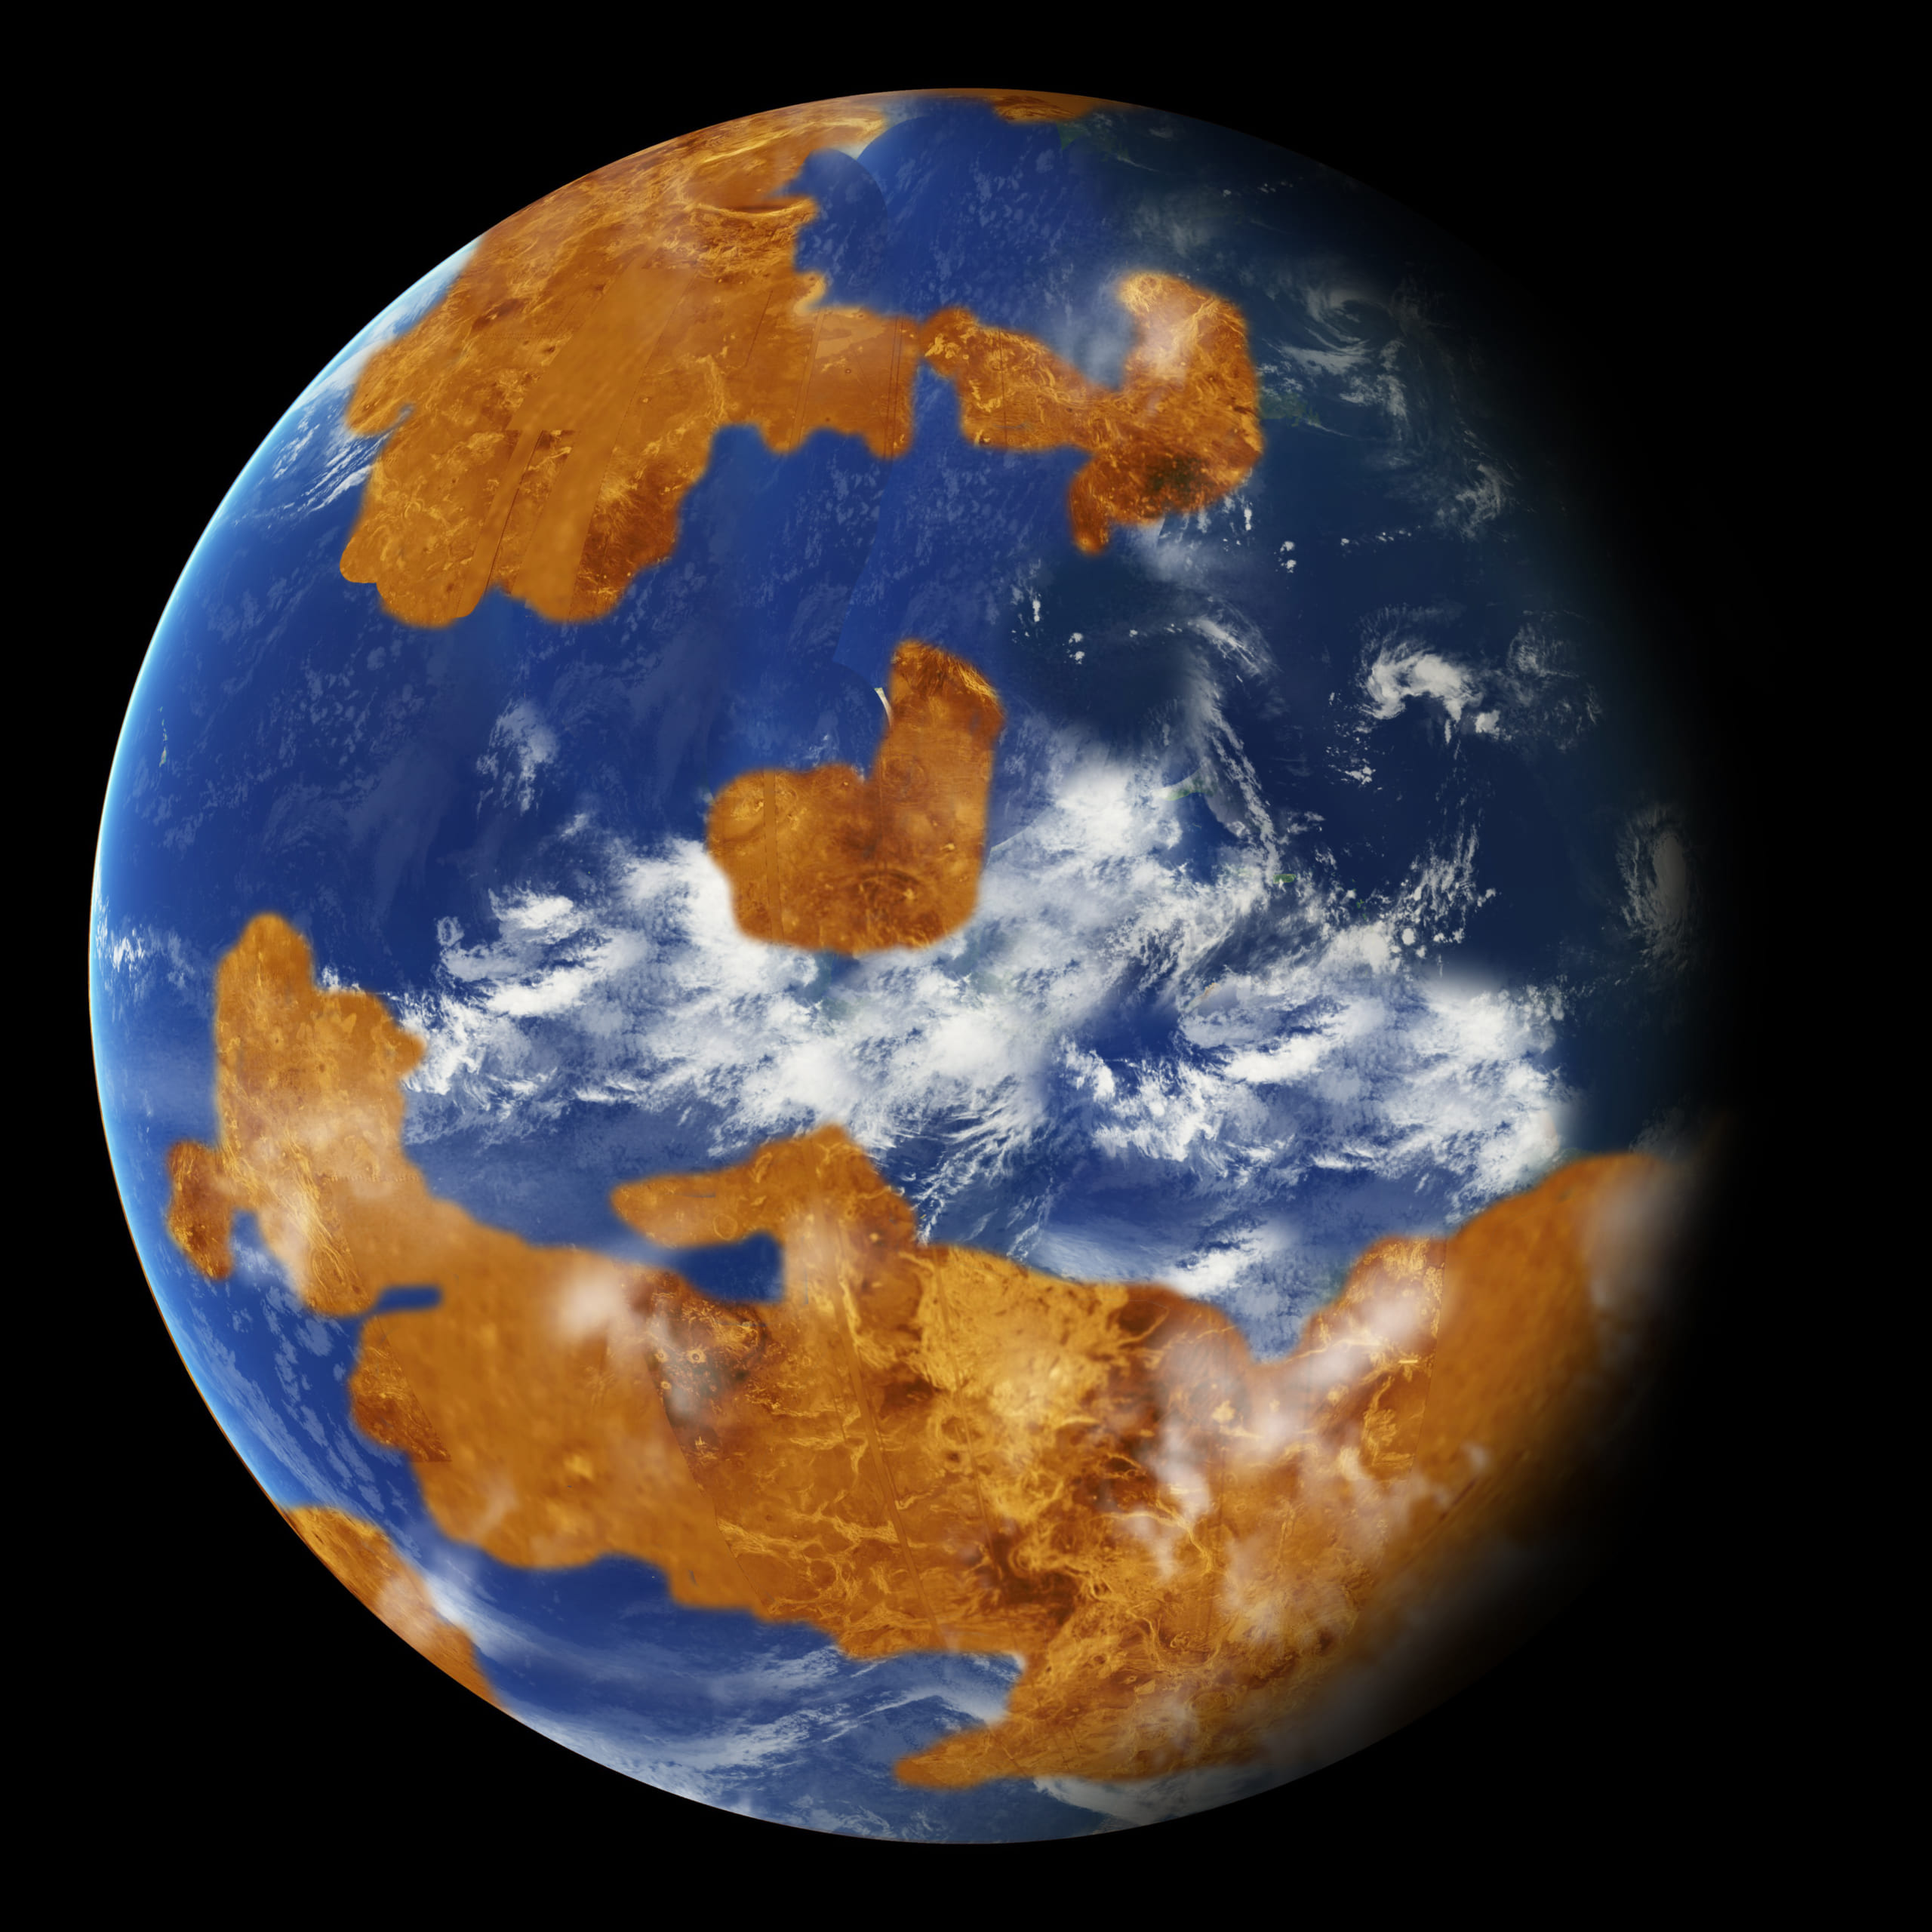 金星はかつて地球と変わらない惑星だった 新事実がシミュレーションから明らかにの画像 1 4 ナゾロジー